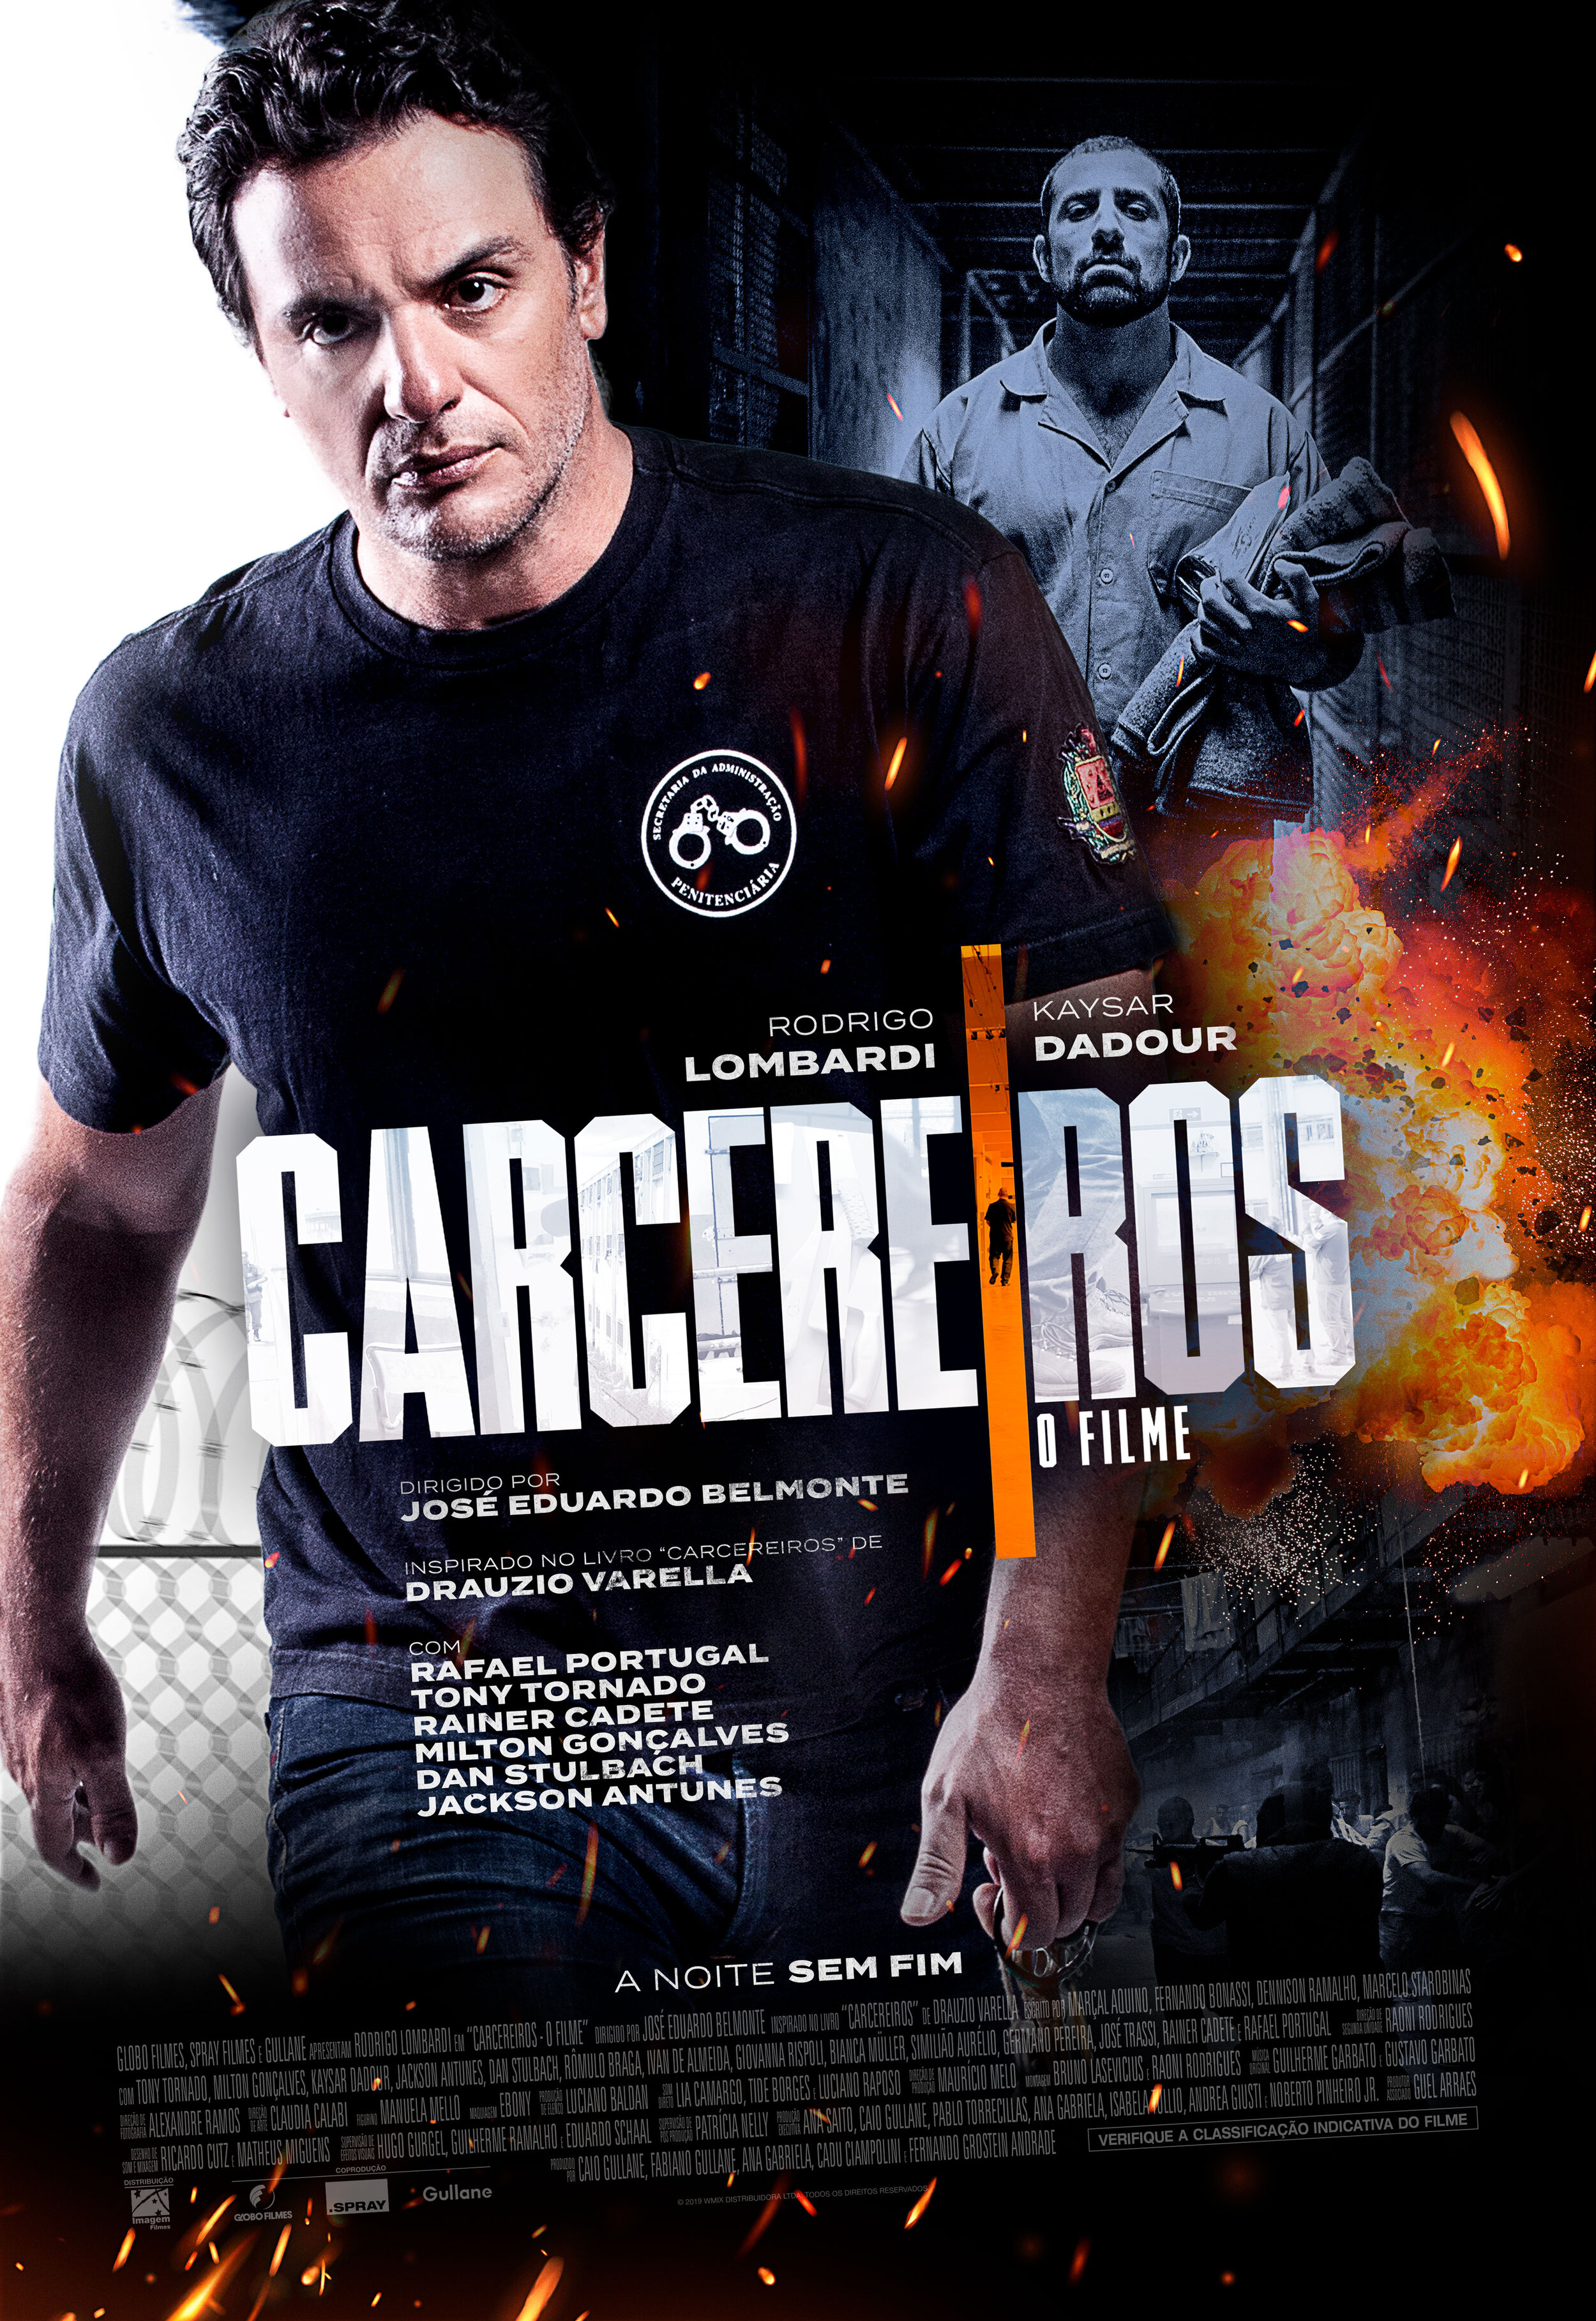 Poster_Carcereiros_Cinema.jpg